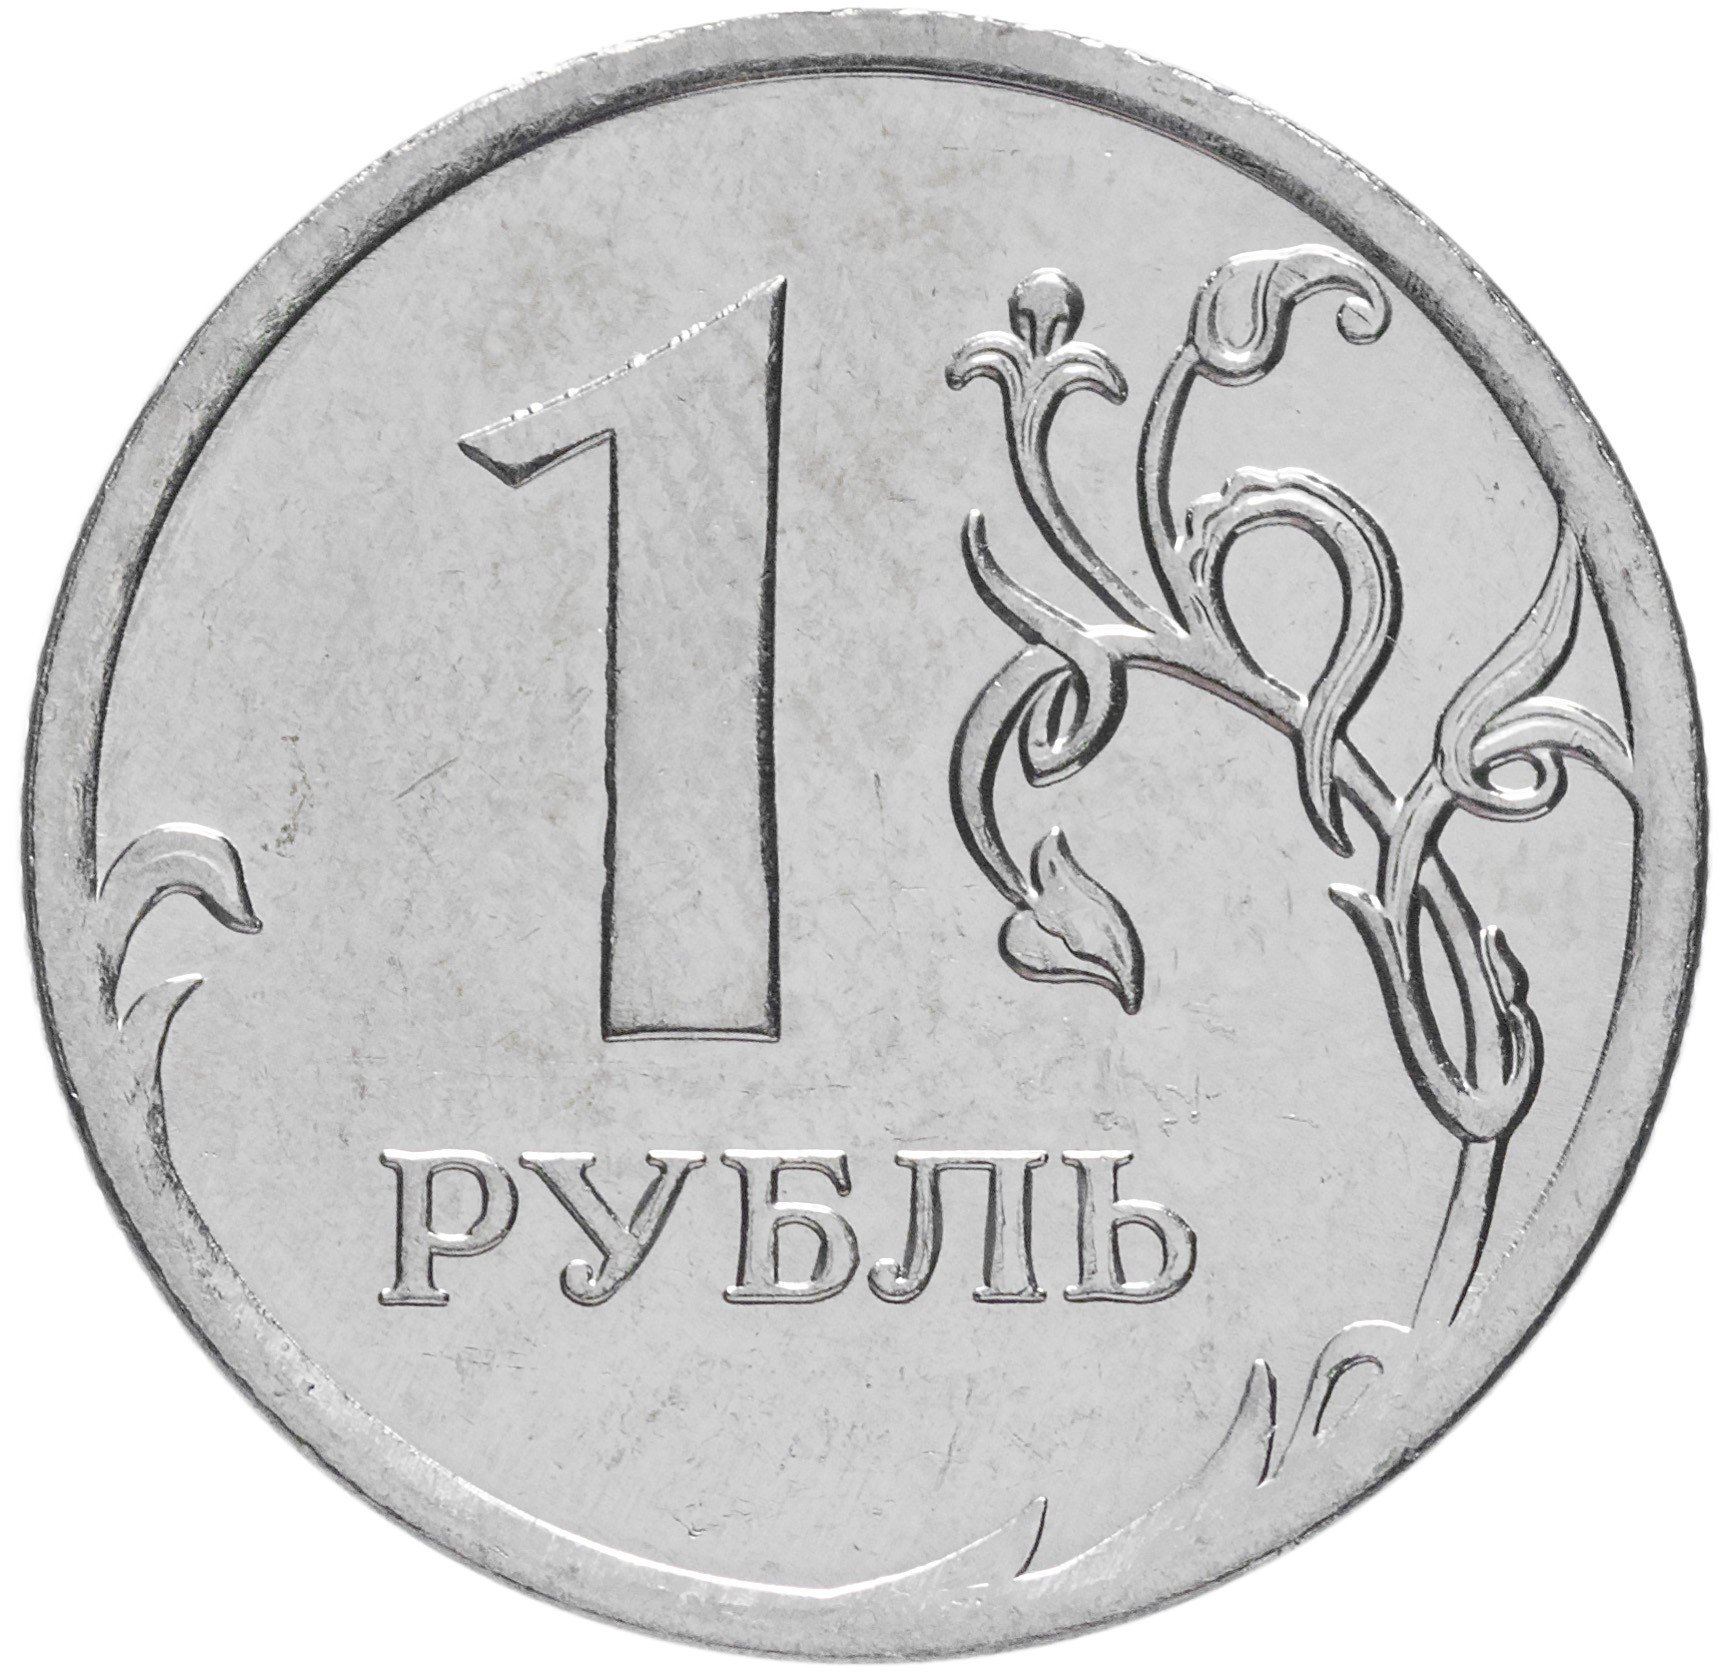 Интернет Магазин Цены В Рублях